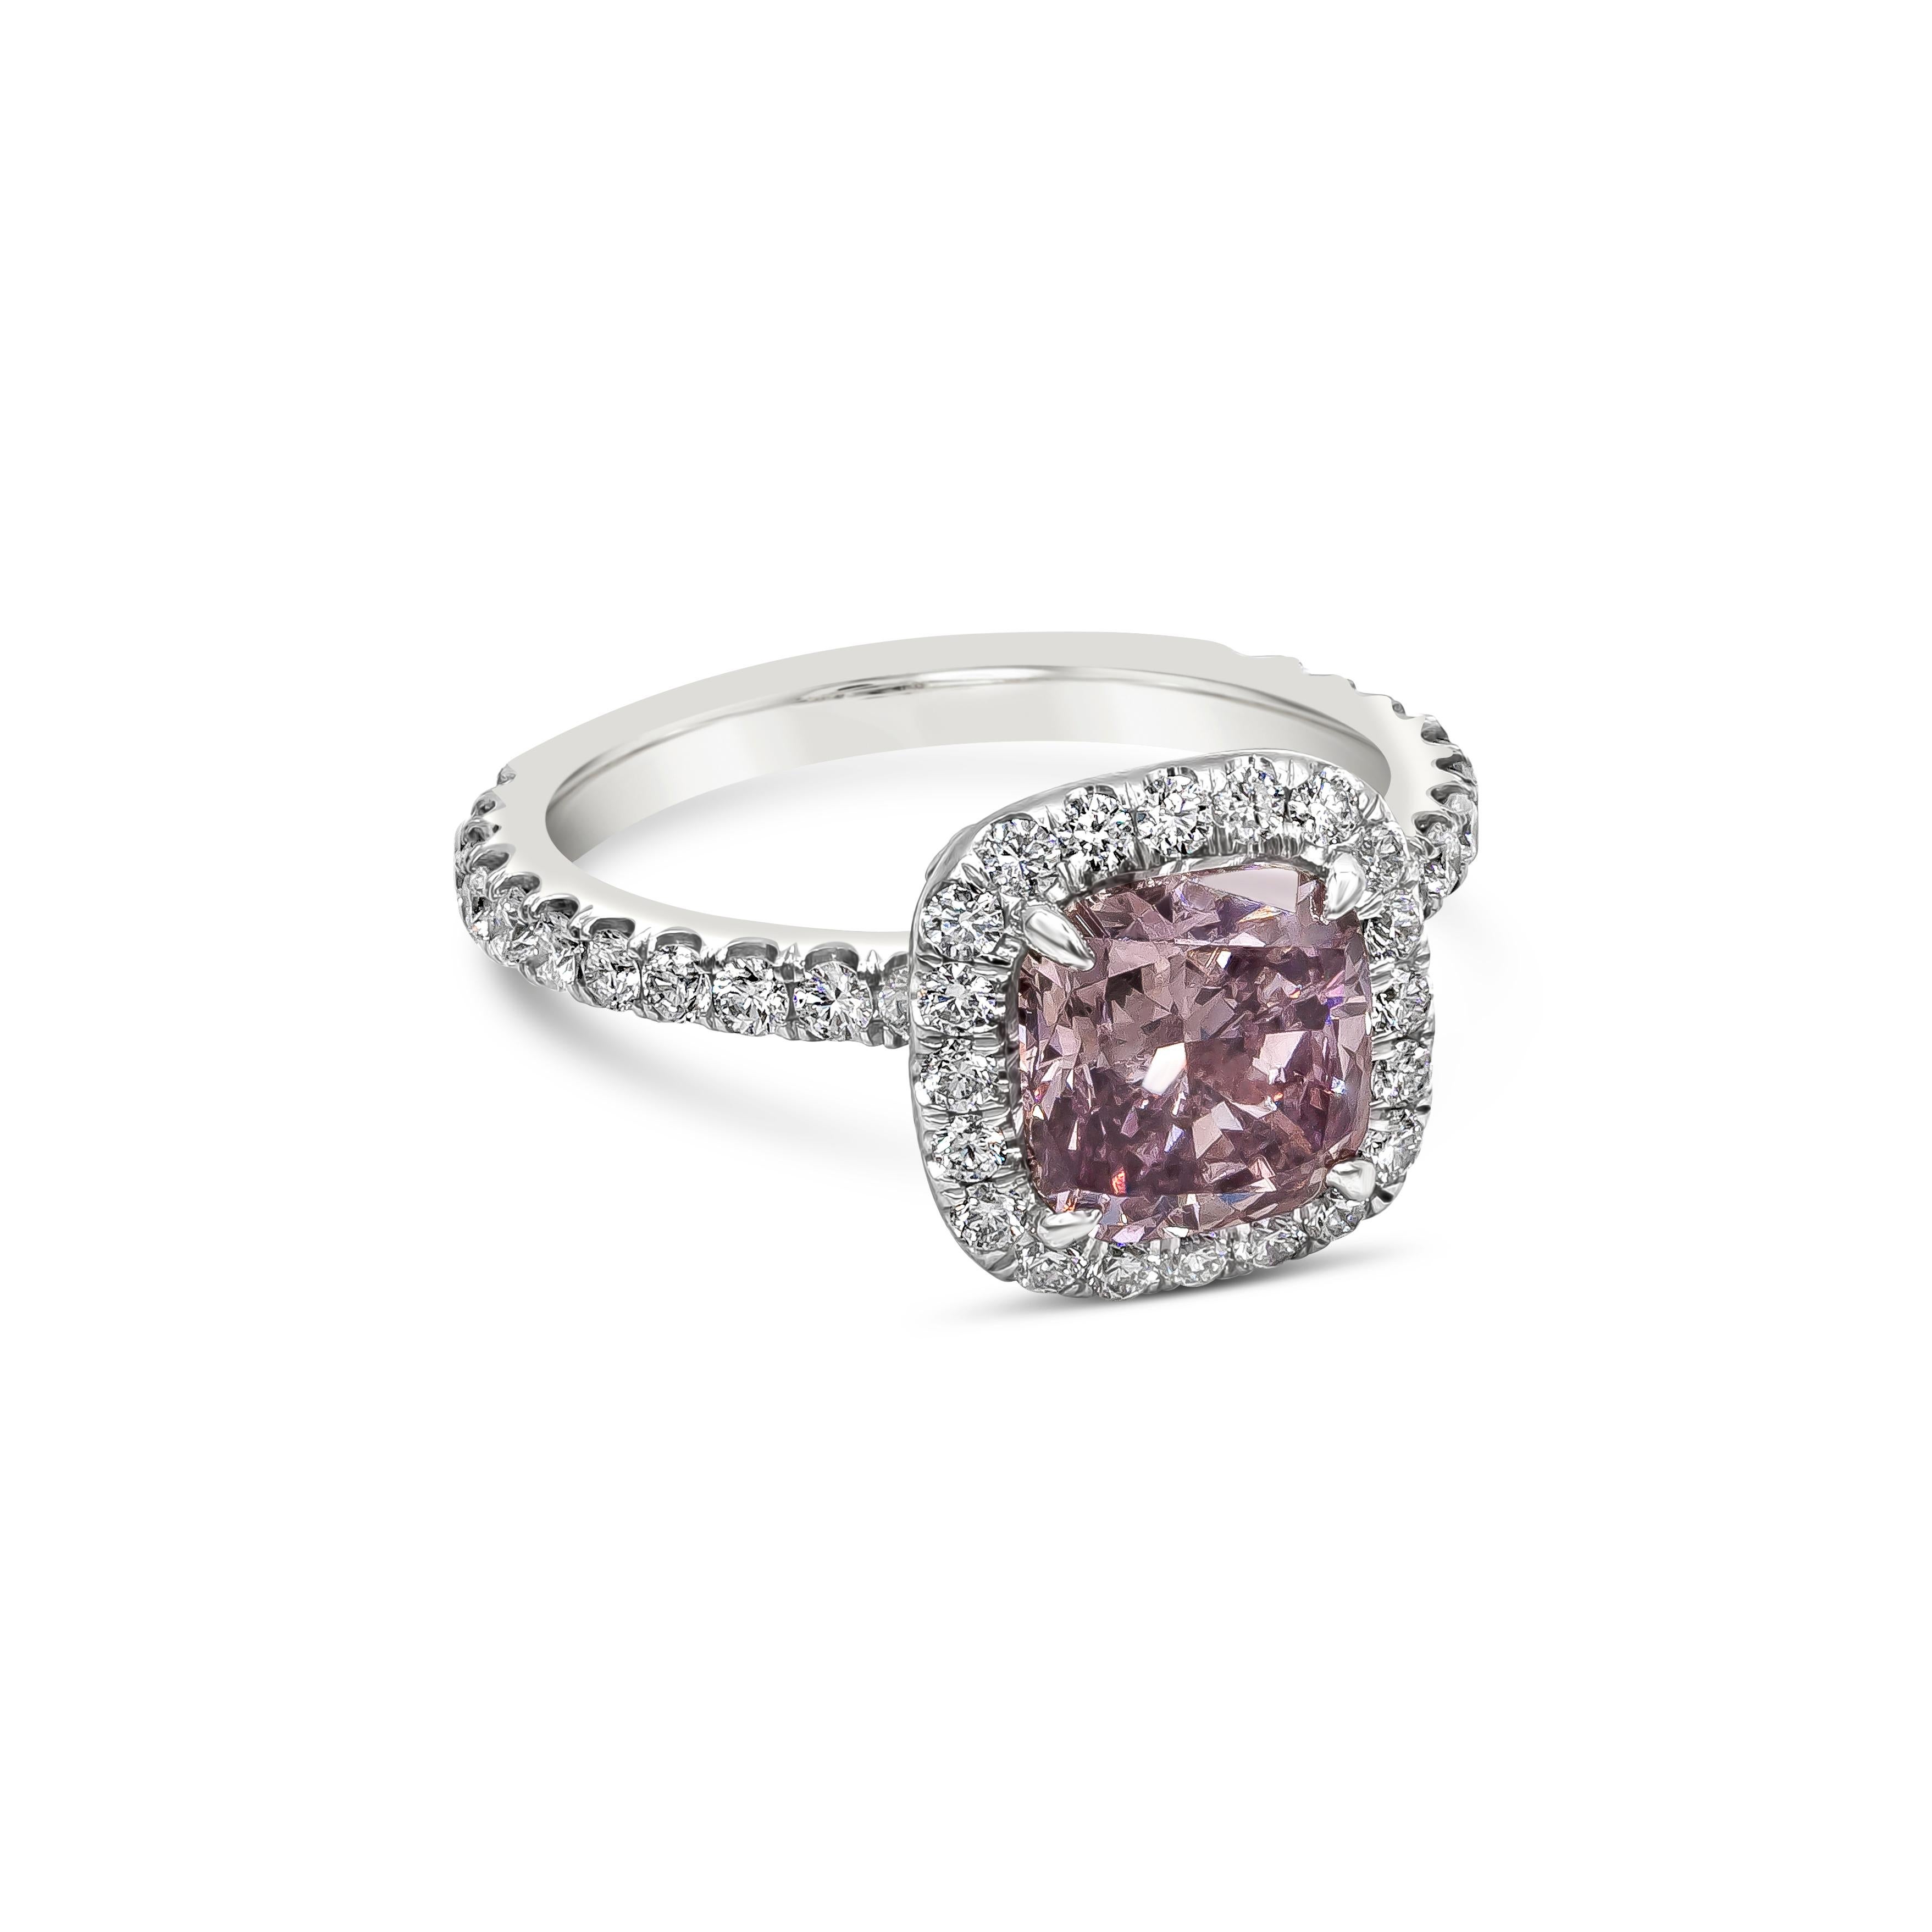 Bague de fiançailles de couleur rare mettant en valeur un diamant certifié GIA de 2,16 carats de taille coussin et de couleur rose-brun foncé et de pureté SI2. La pierre centrale est entourée d'une rangée de diamants ronds de taille brillant en